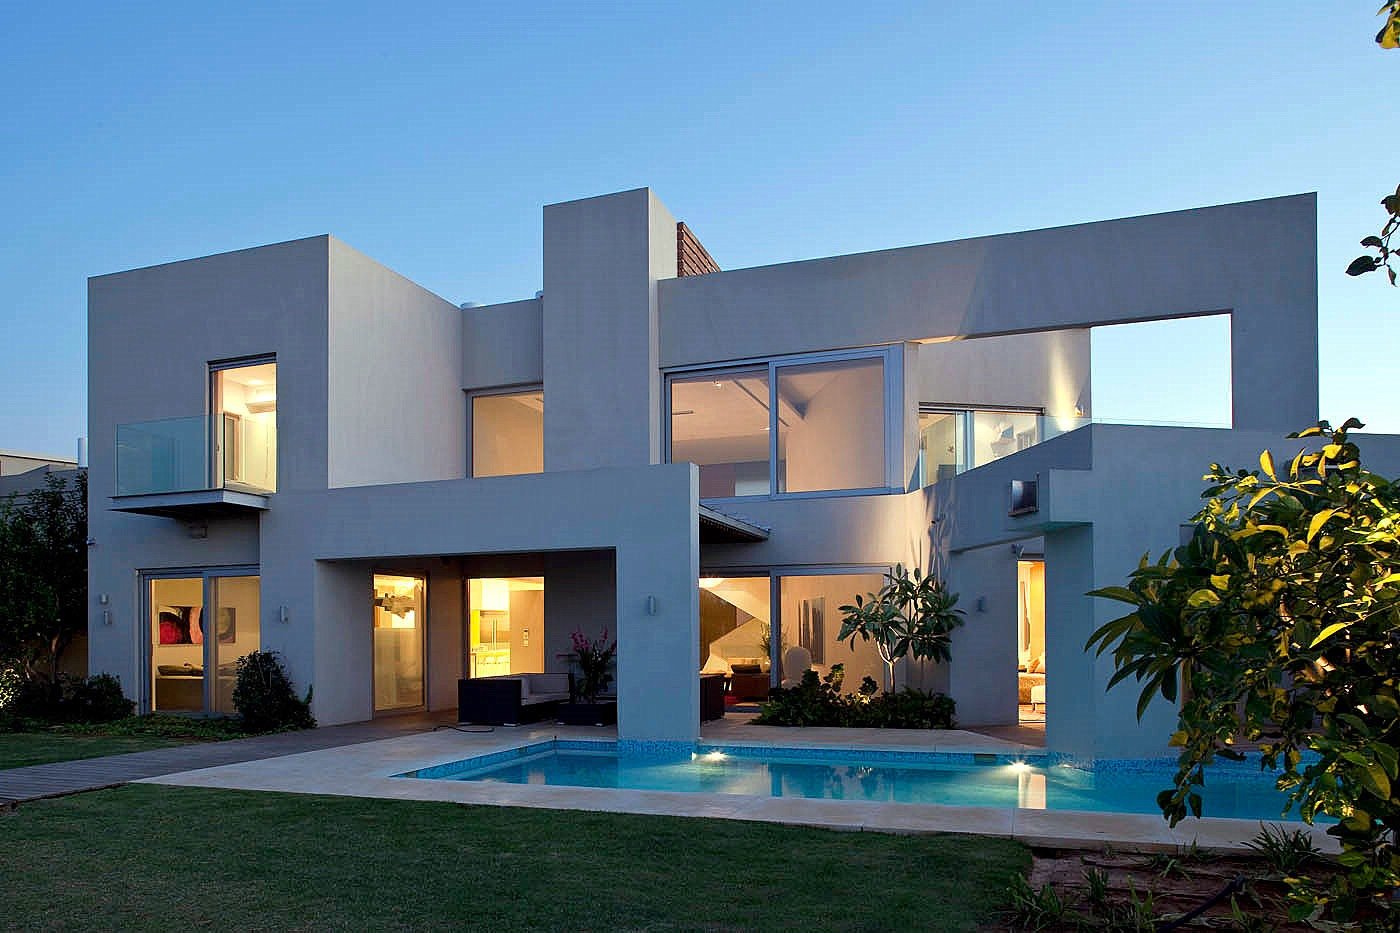 Best modern. Модерн дом в реальной жизни. Дом в израильском стиле. Израильский стиль дома. Красивый дом в реальной жизни.